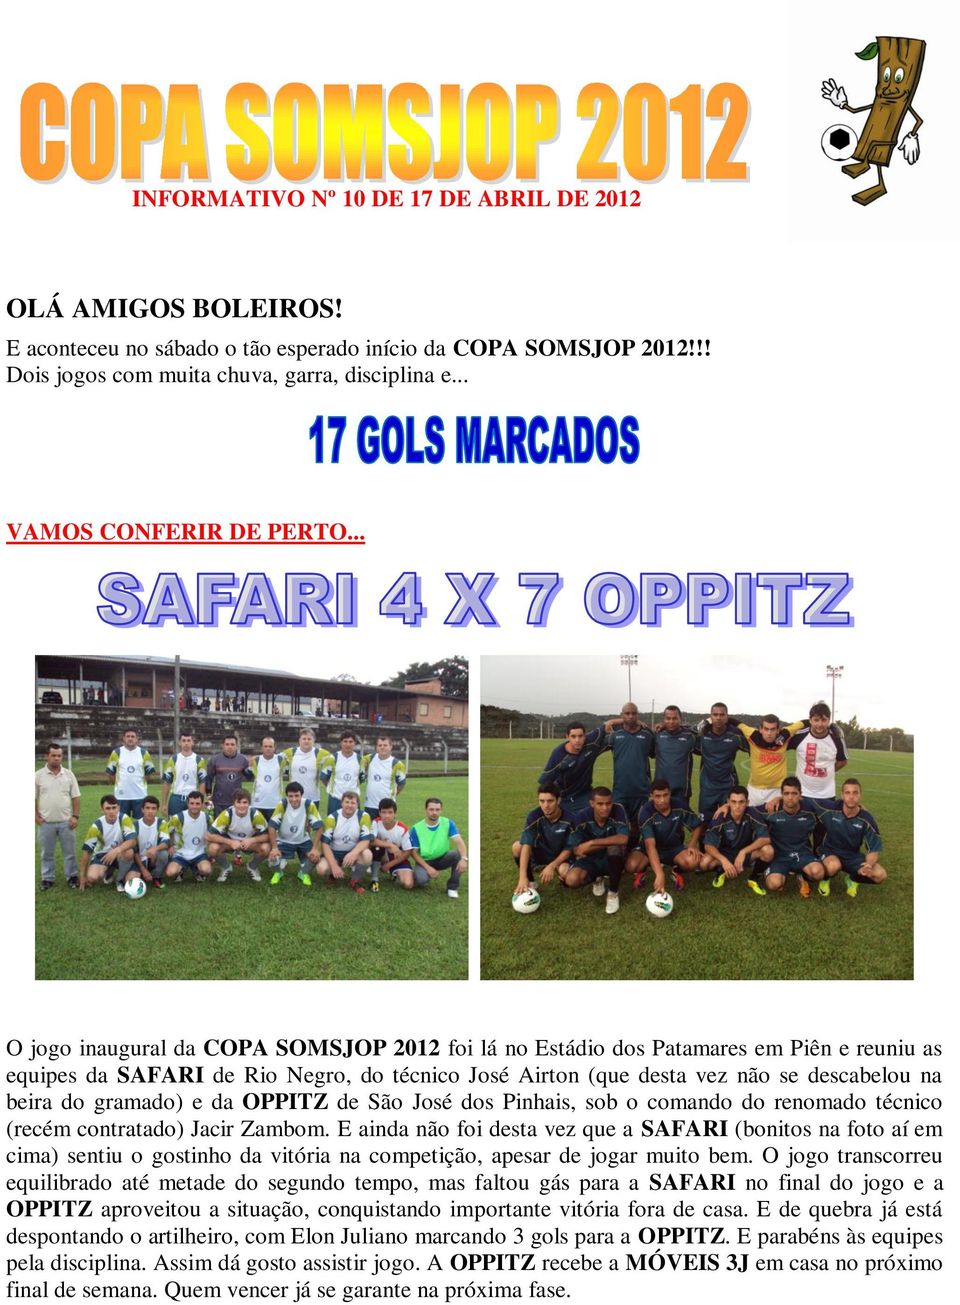 .. O jogo inaugural da COPA SOMSJOP 2012 foi lá no Estádio dos Patamares em Piên e reuniu as equipes da SAFARI de Rio Negro, do técnico José Airton (que desta vez não se descabelou na beira do